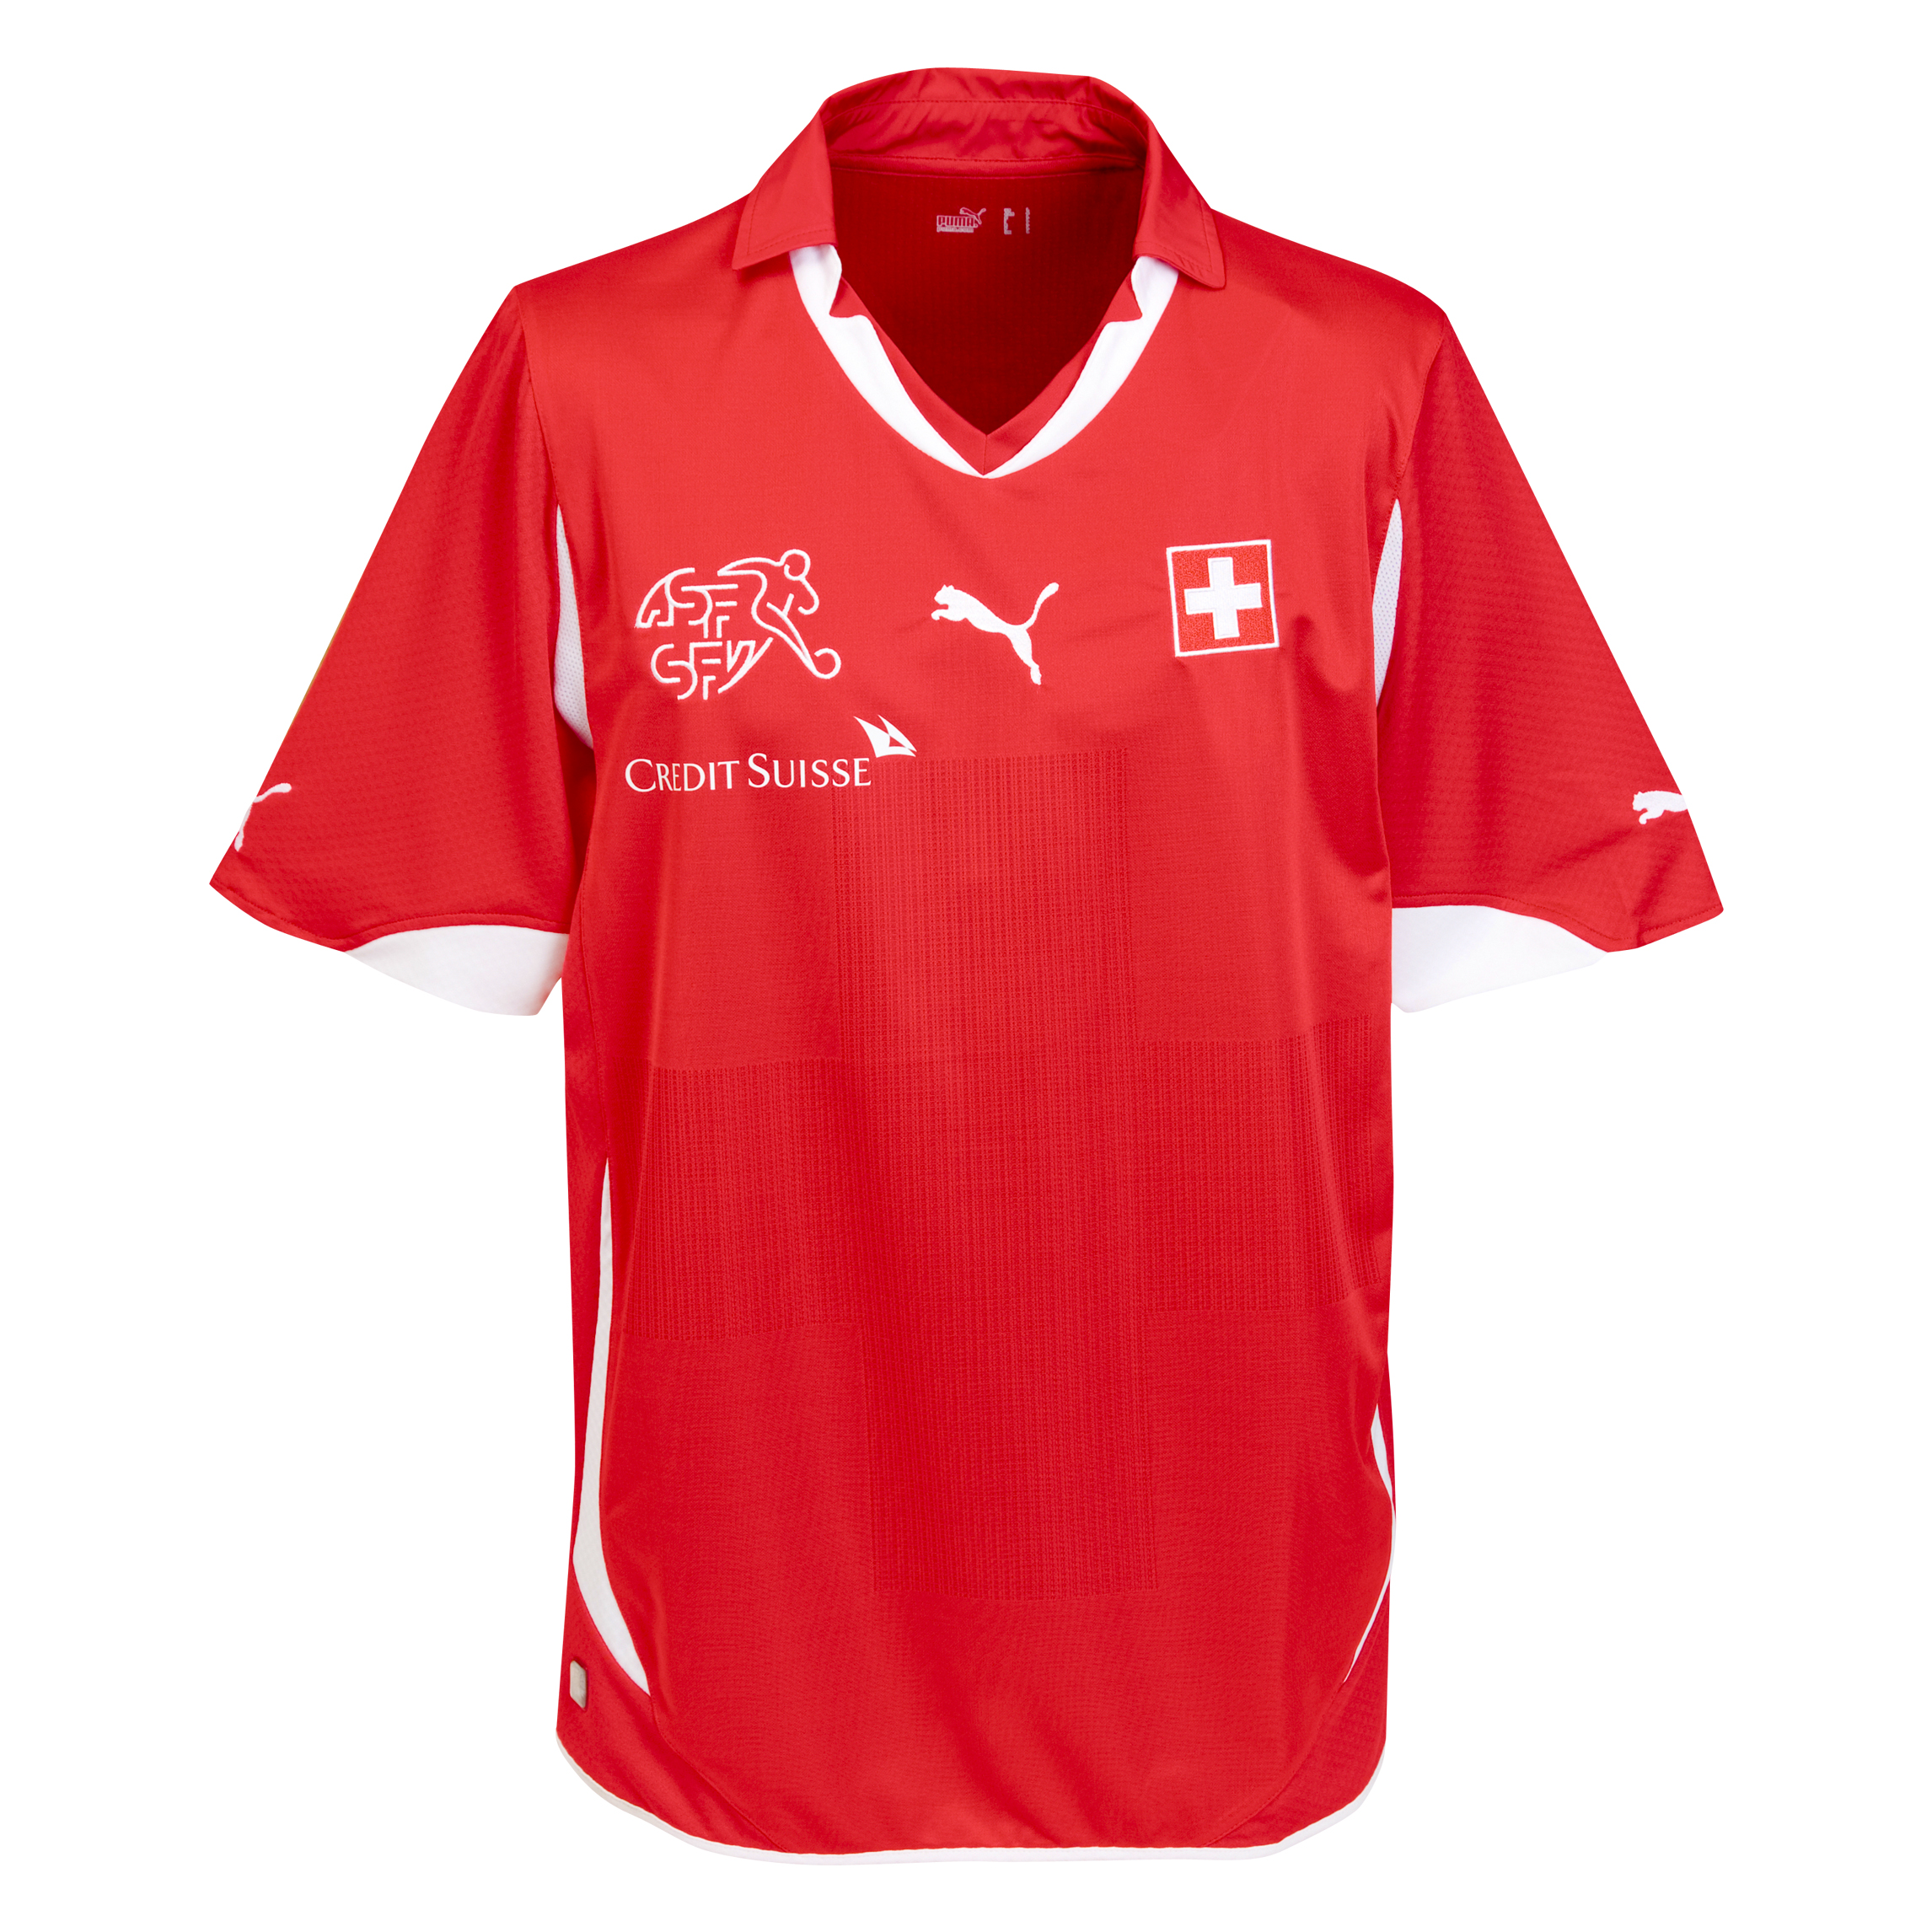 الملابس الرسمية لكأس العالم 2010 Kb-65923